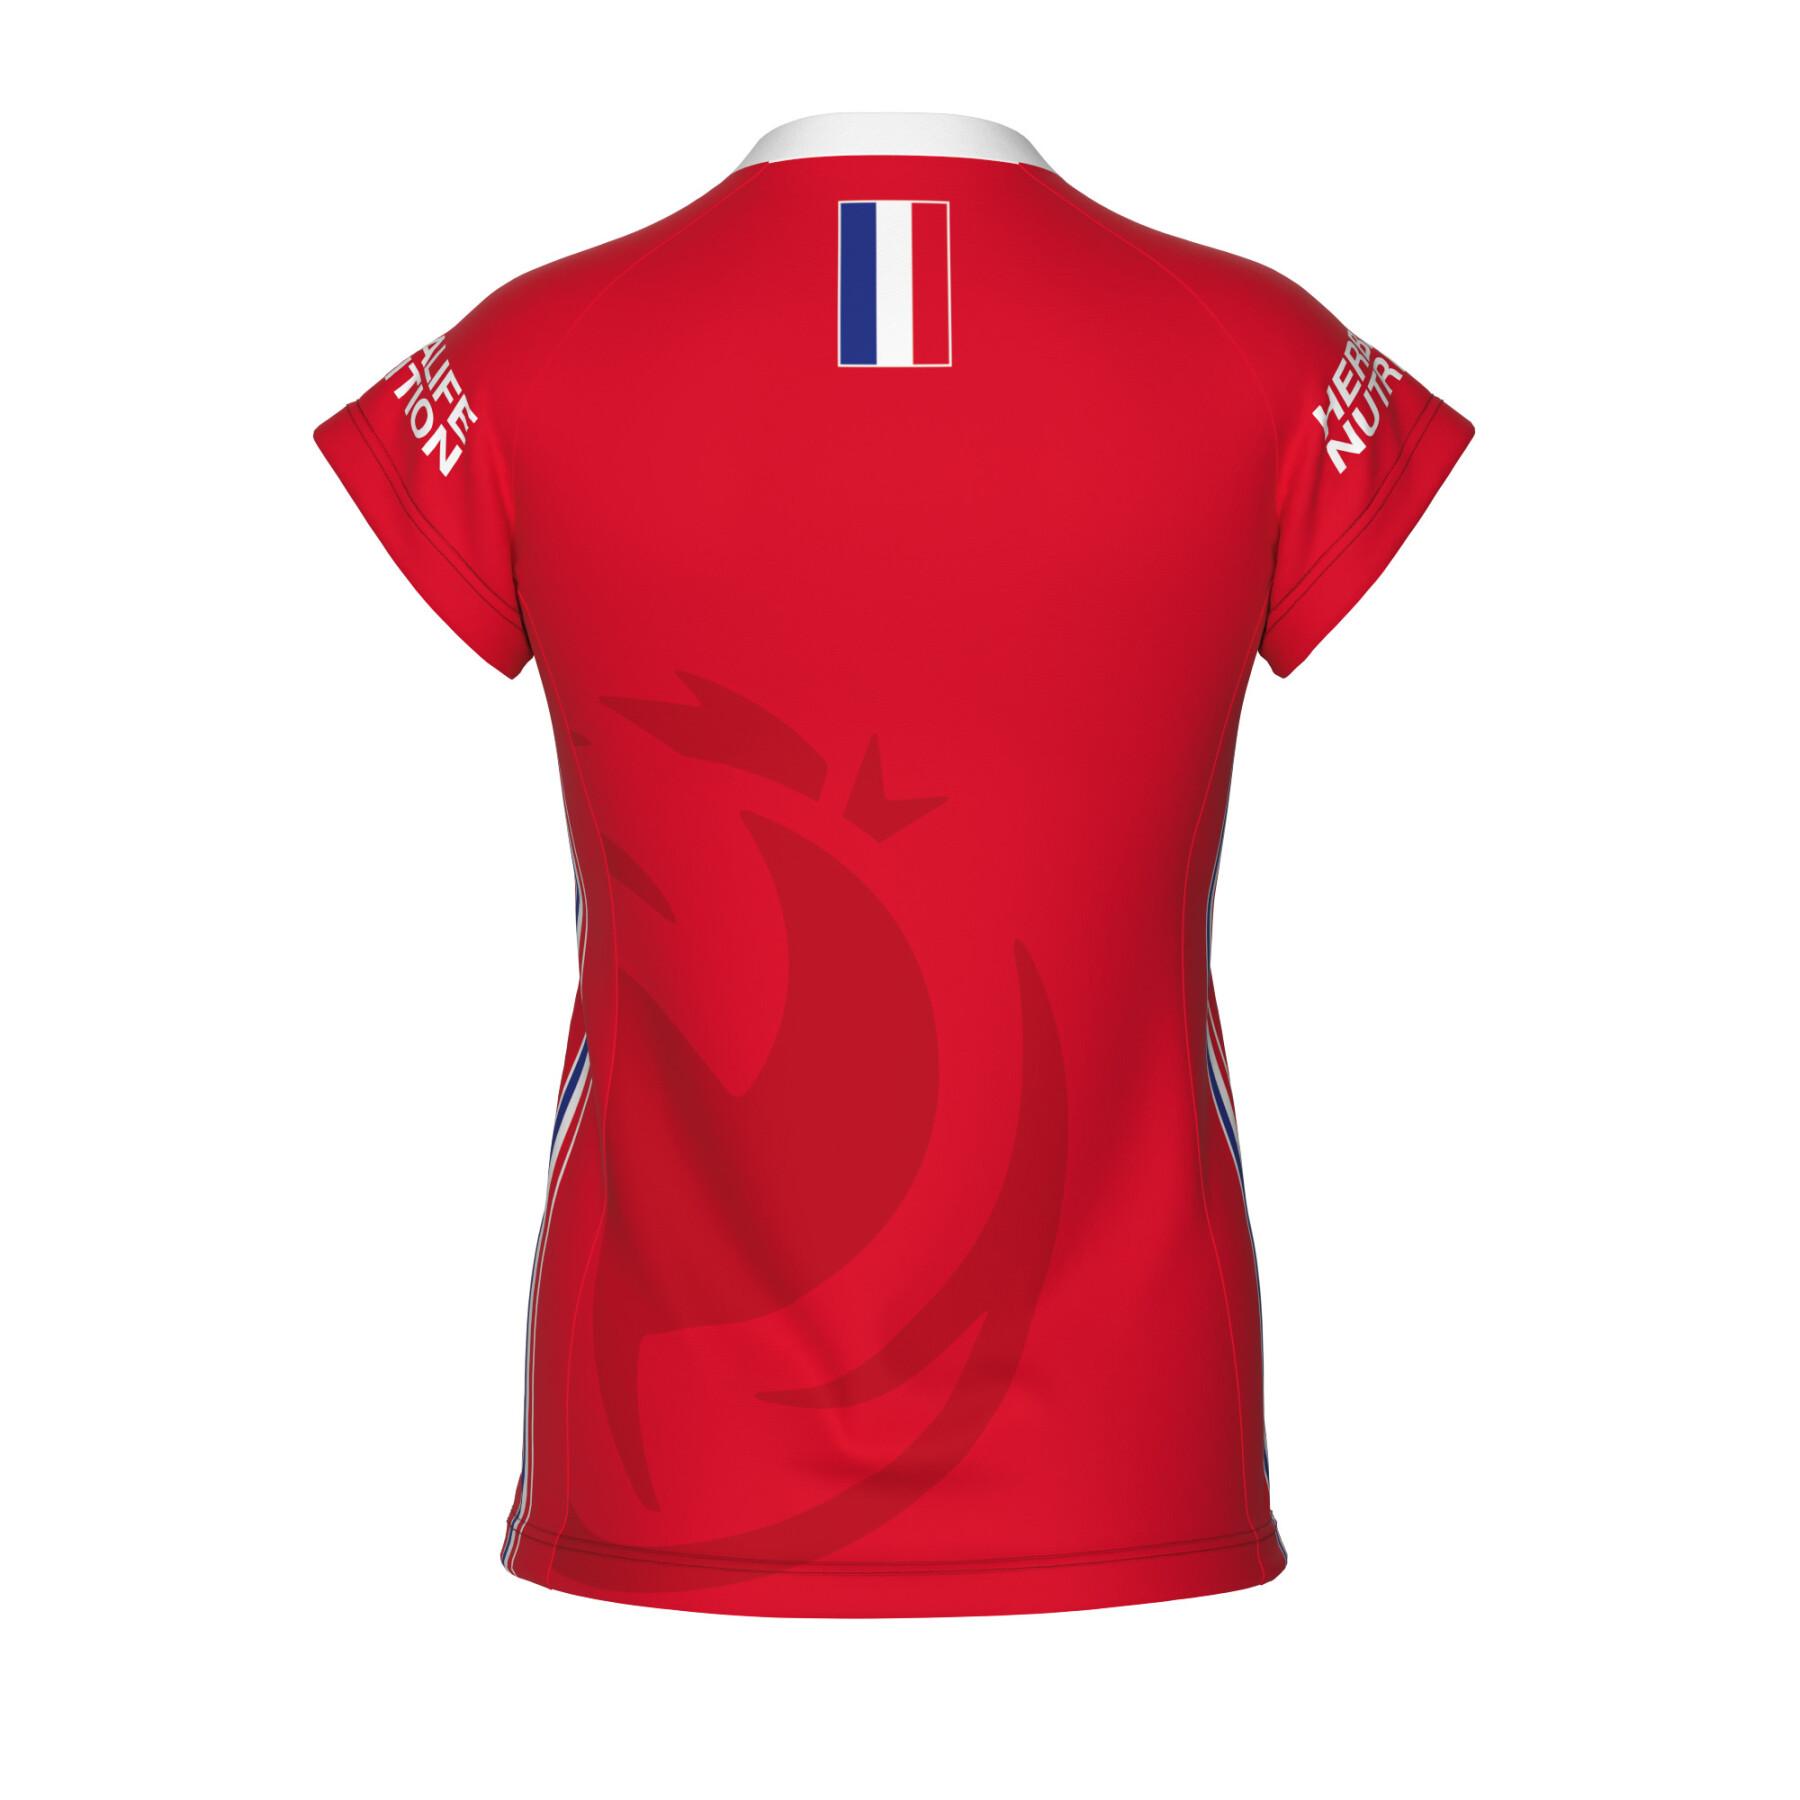 Trzecia koszulka kobiet France 2022